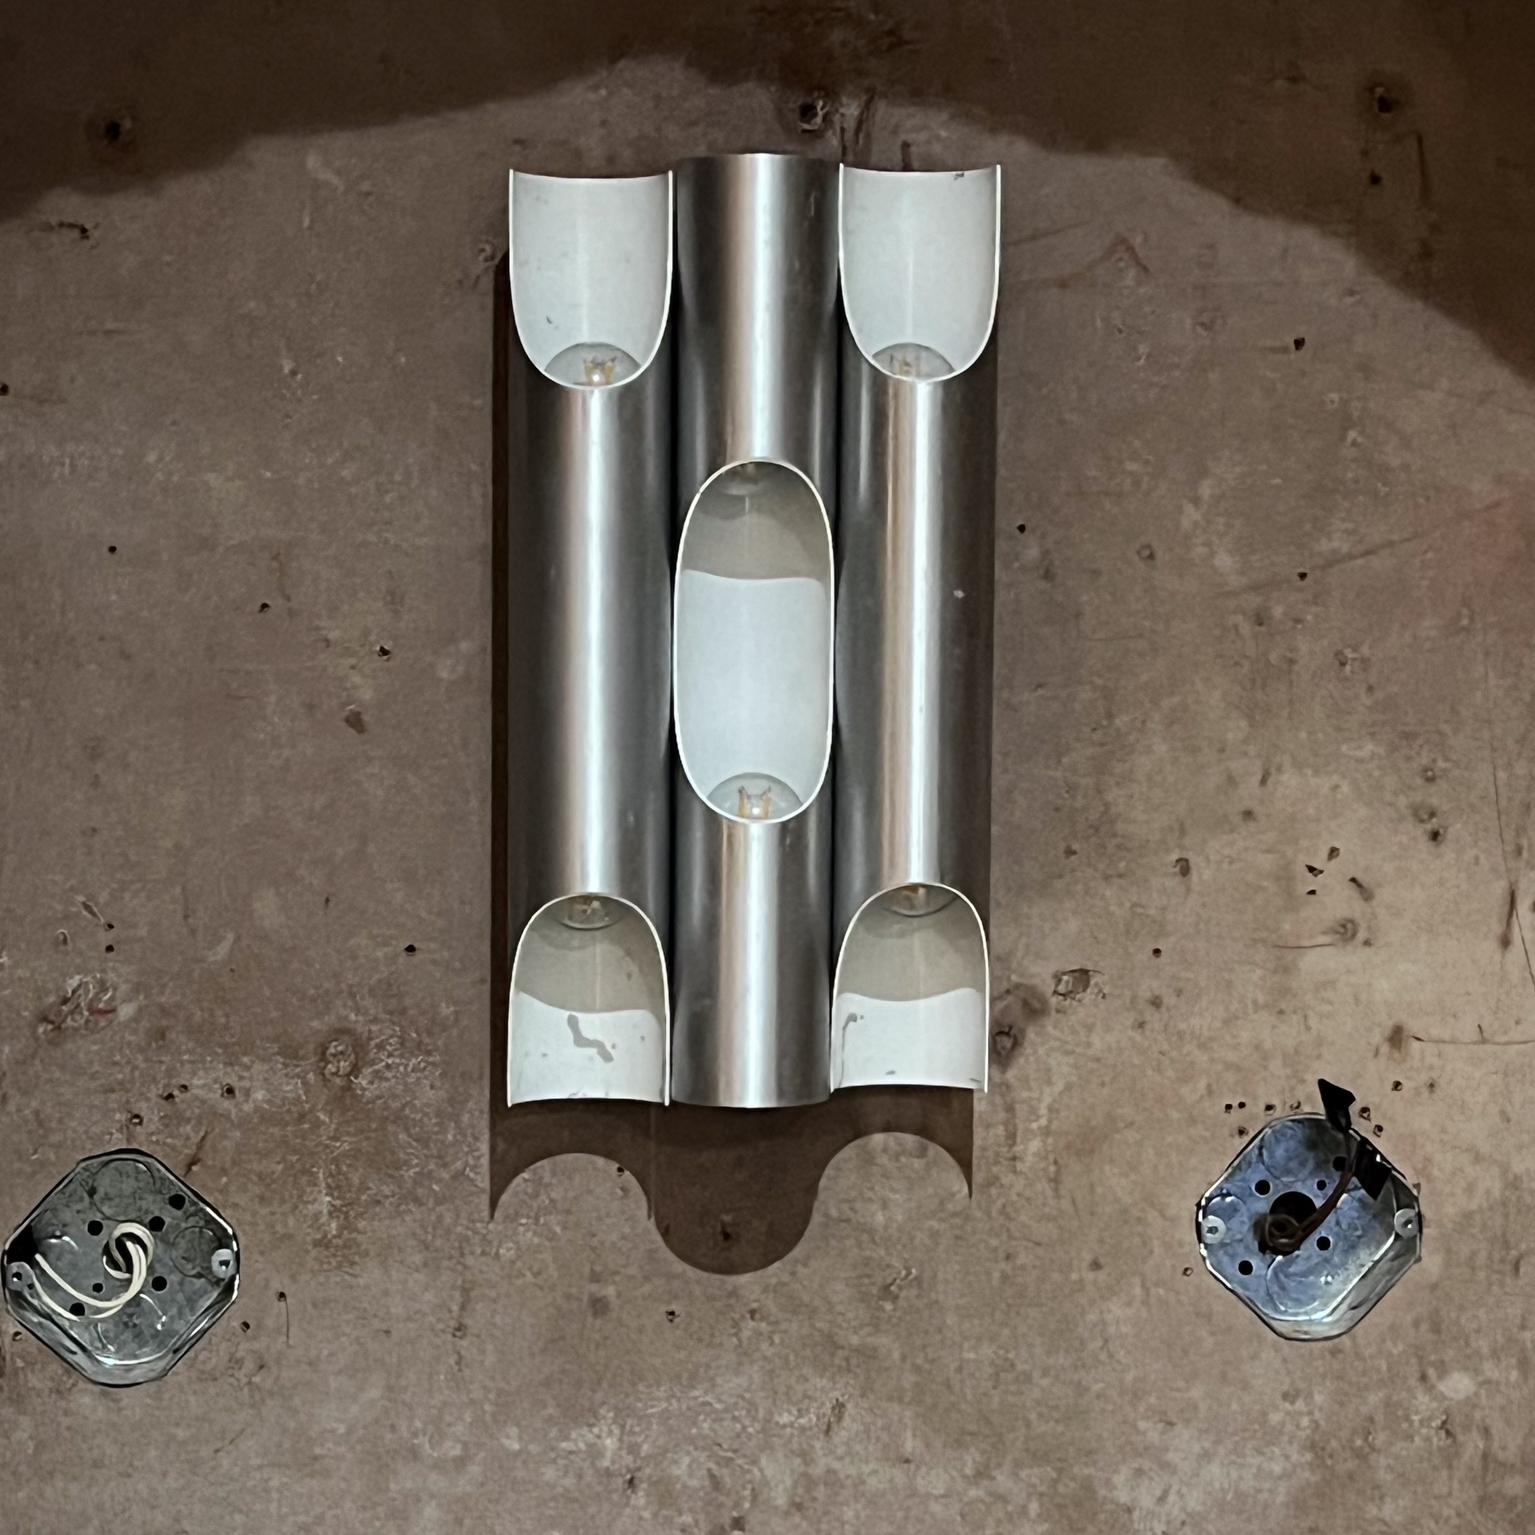 Moderne Wandleuchte Fuga aus Metall entworfen von Maija Liisa Komulainen Finnland für RAAK Amsterdam 1960er Jahre Niederlande
Wunderschöne Wandleuchte aus drei eloxierten Aluminiumrohren. 
Zwei Lichtquellen an der Lampe. Der zylindrische Schirm